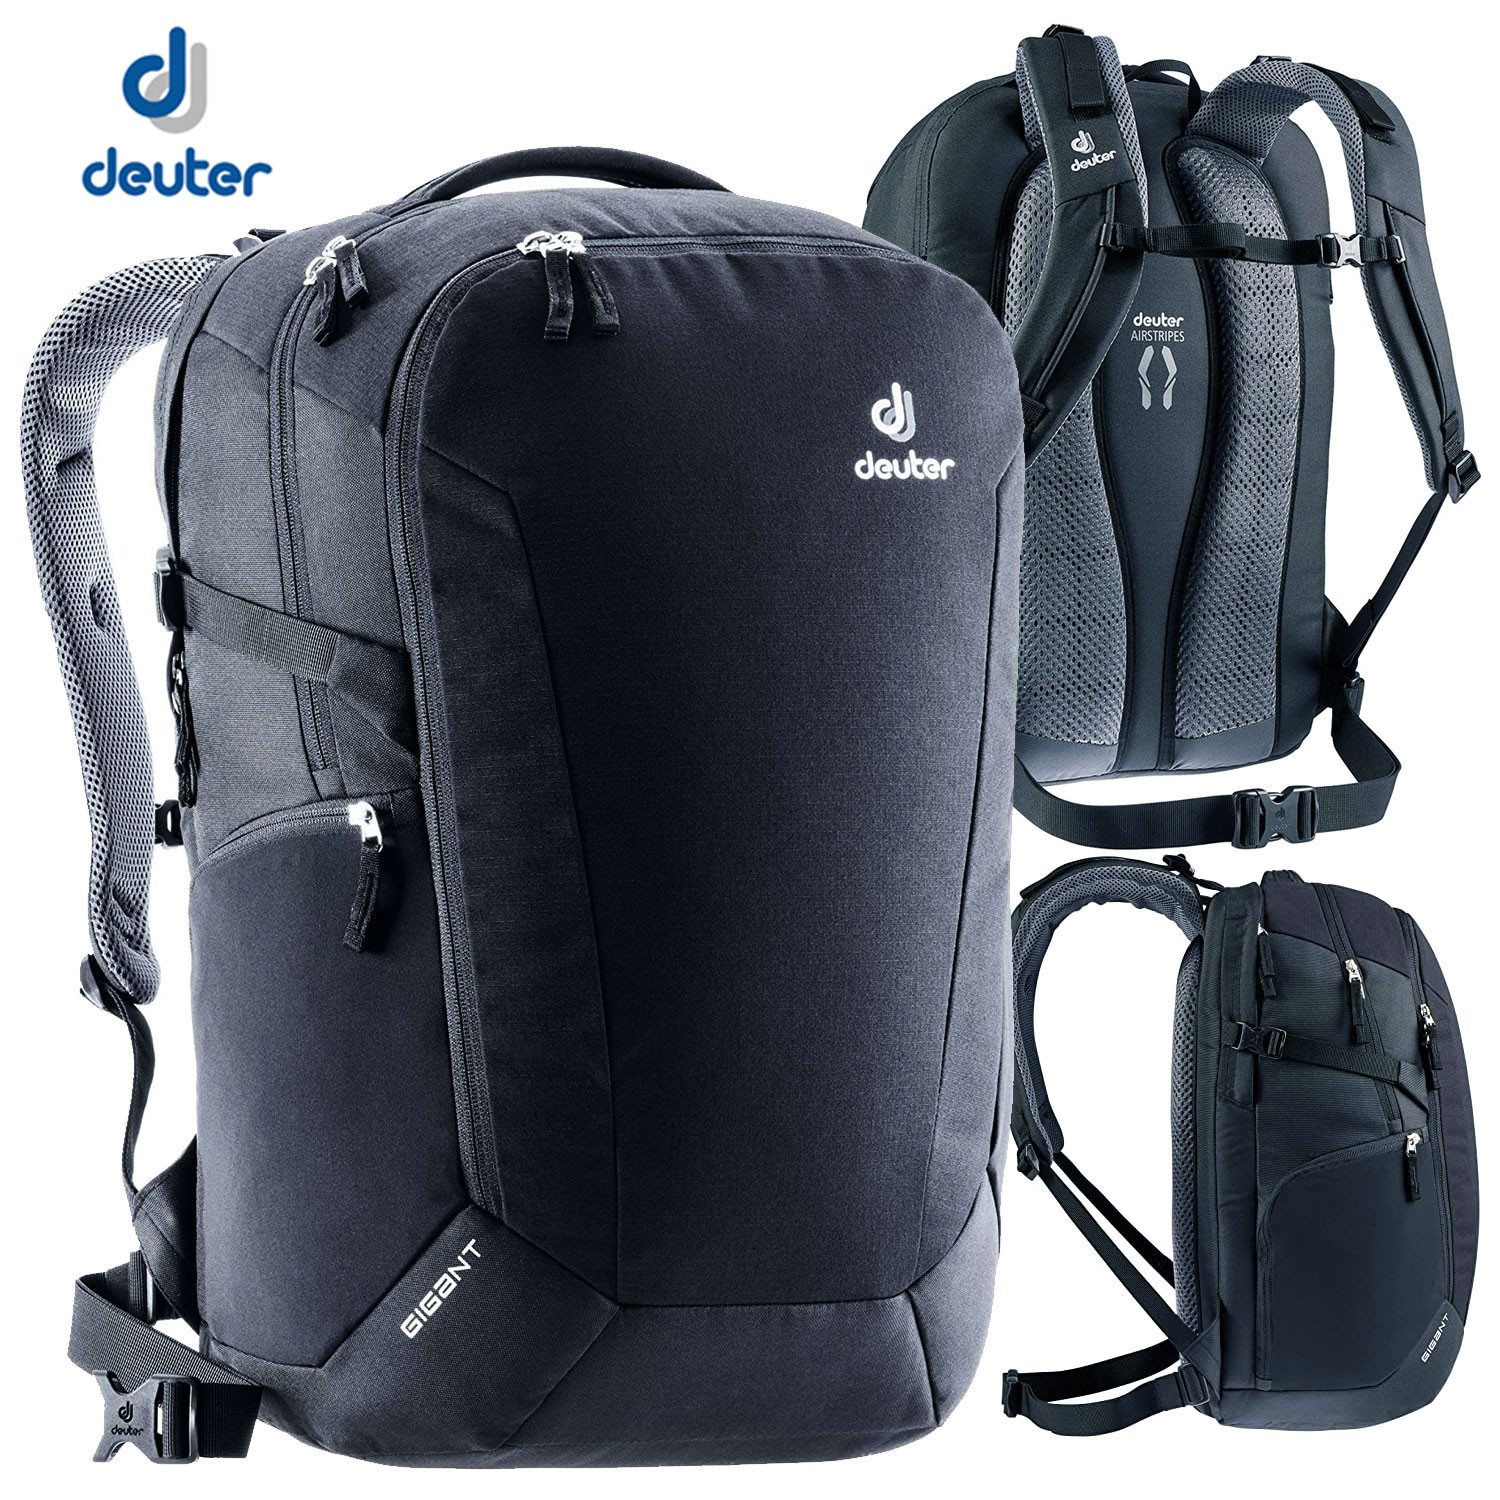 Deuter Gigant Backpack Supply